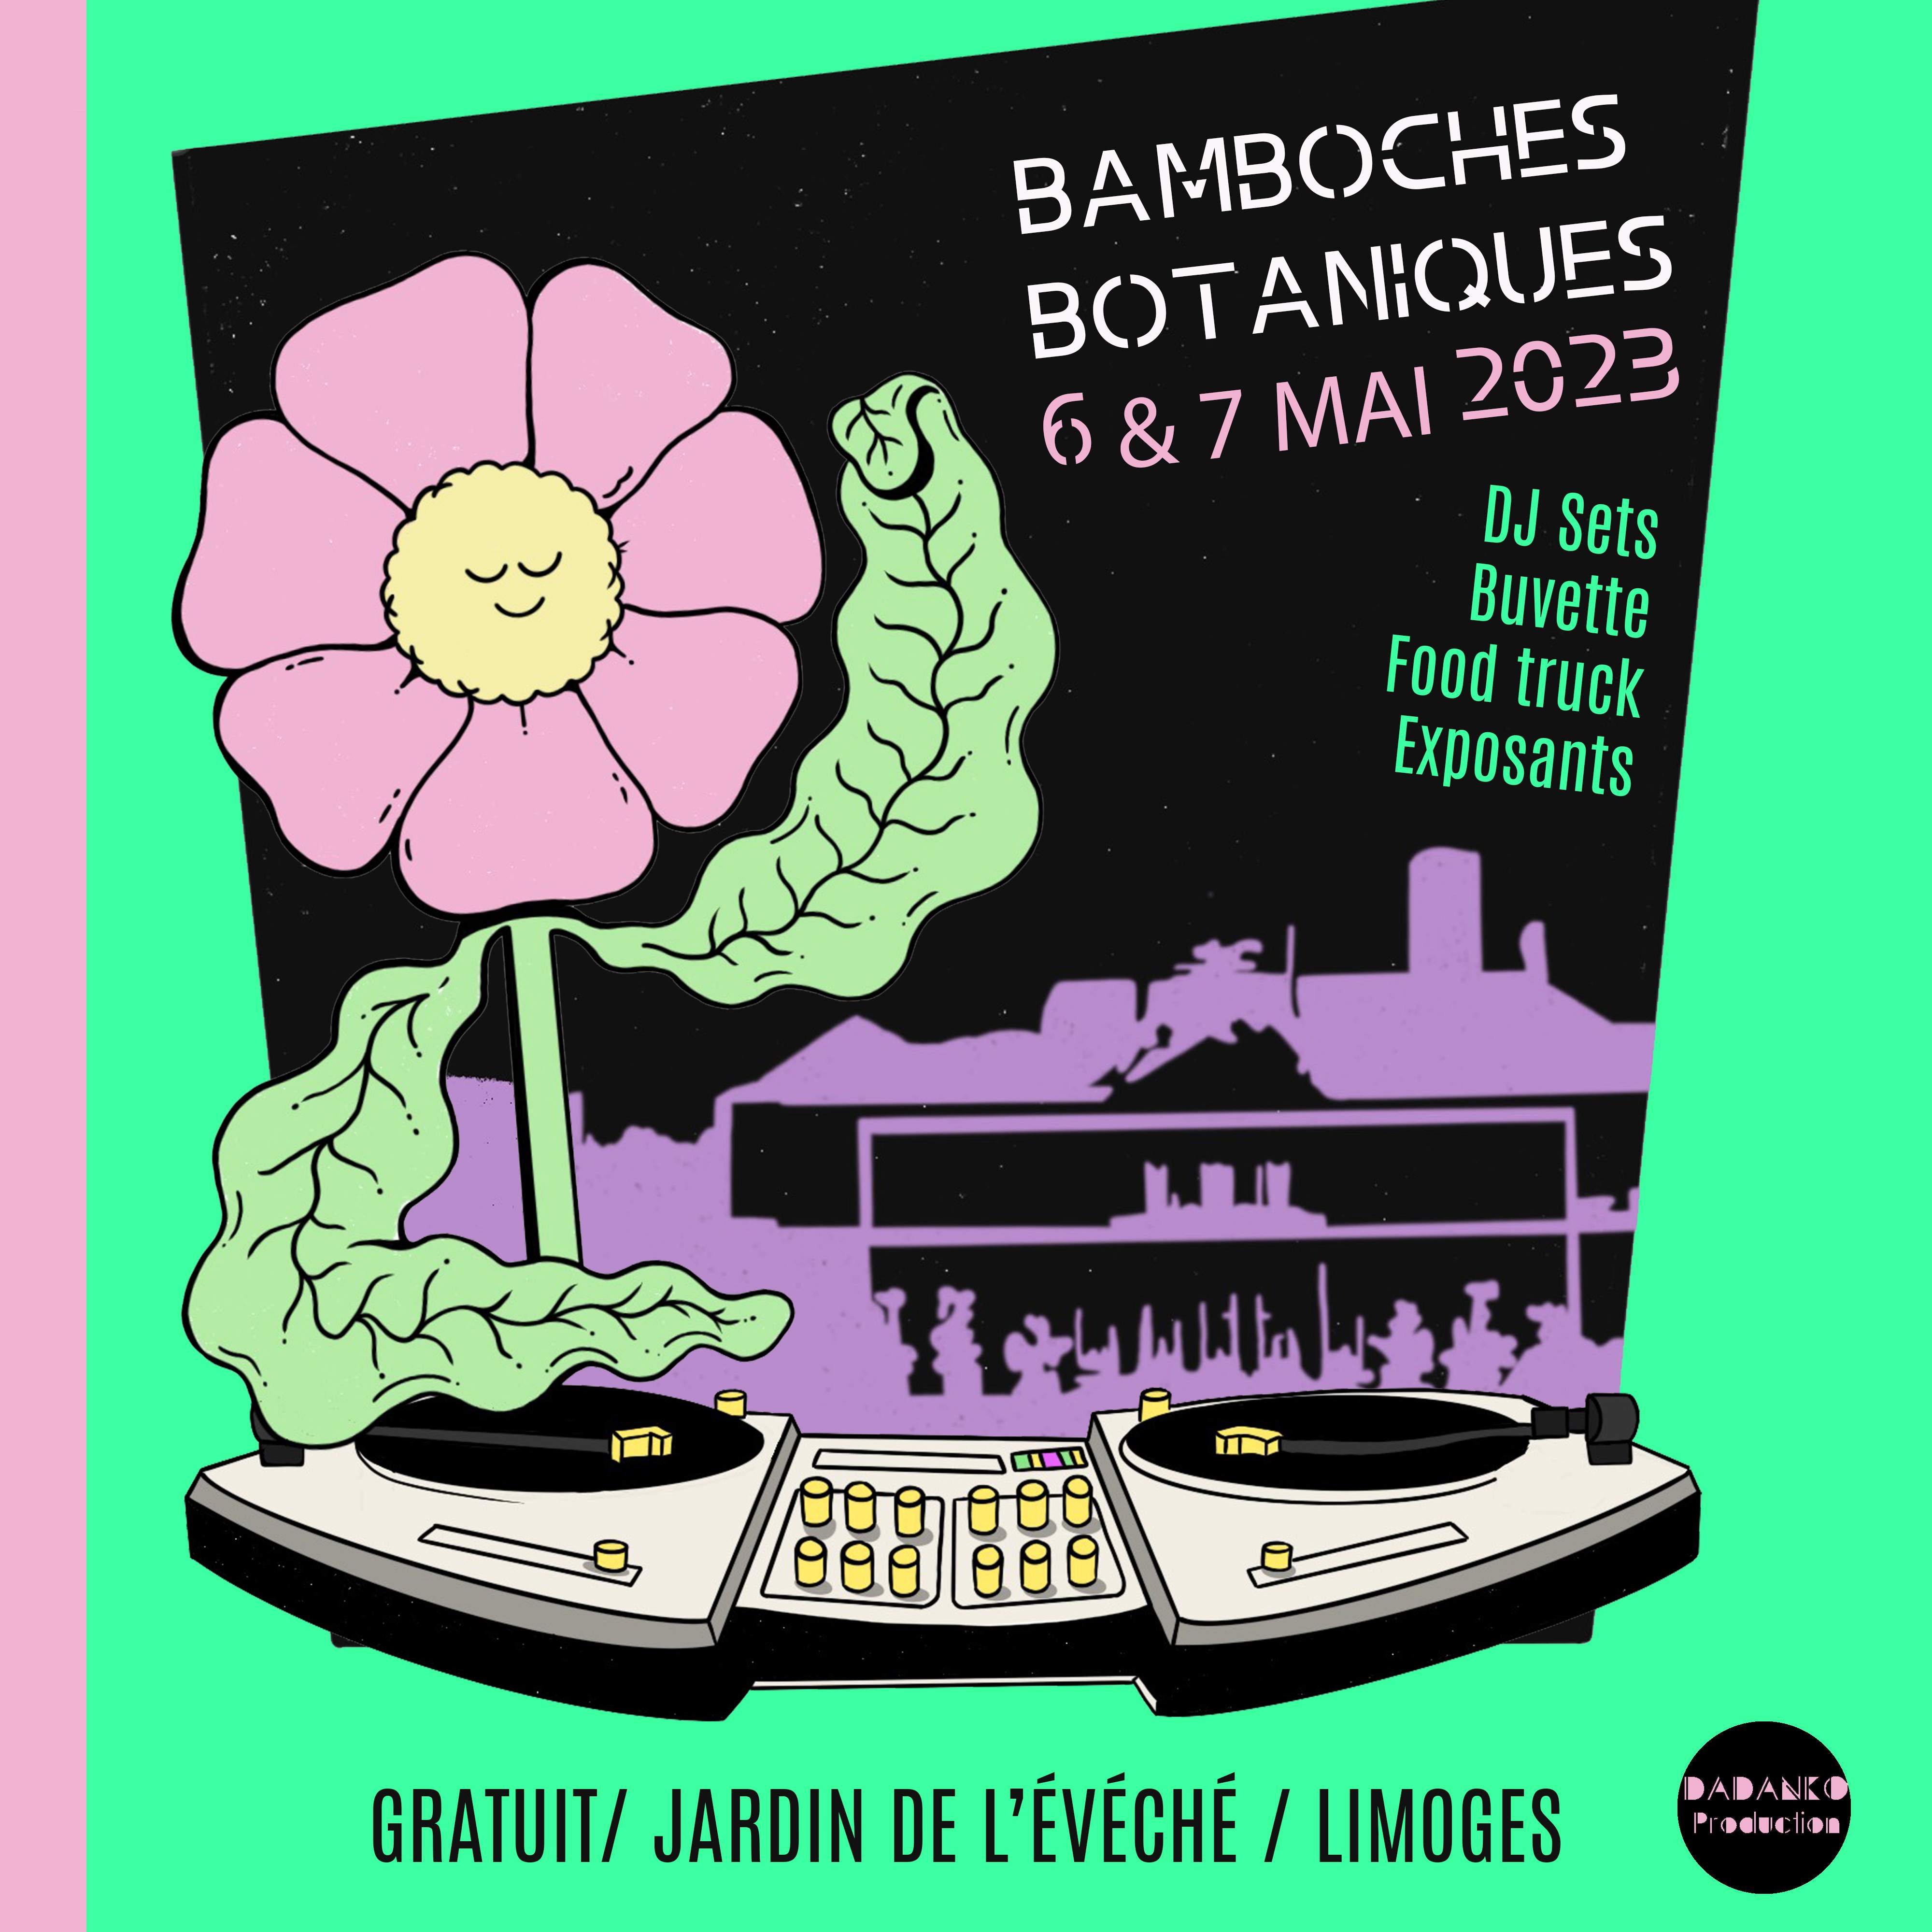 Bamboches Botaniques 2023 - Página trasera